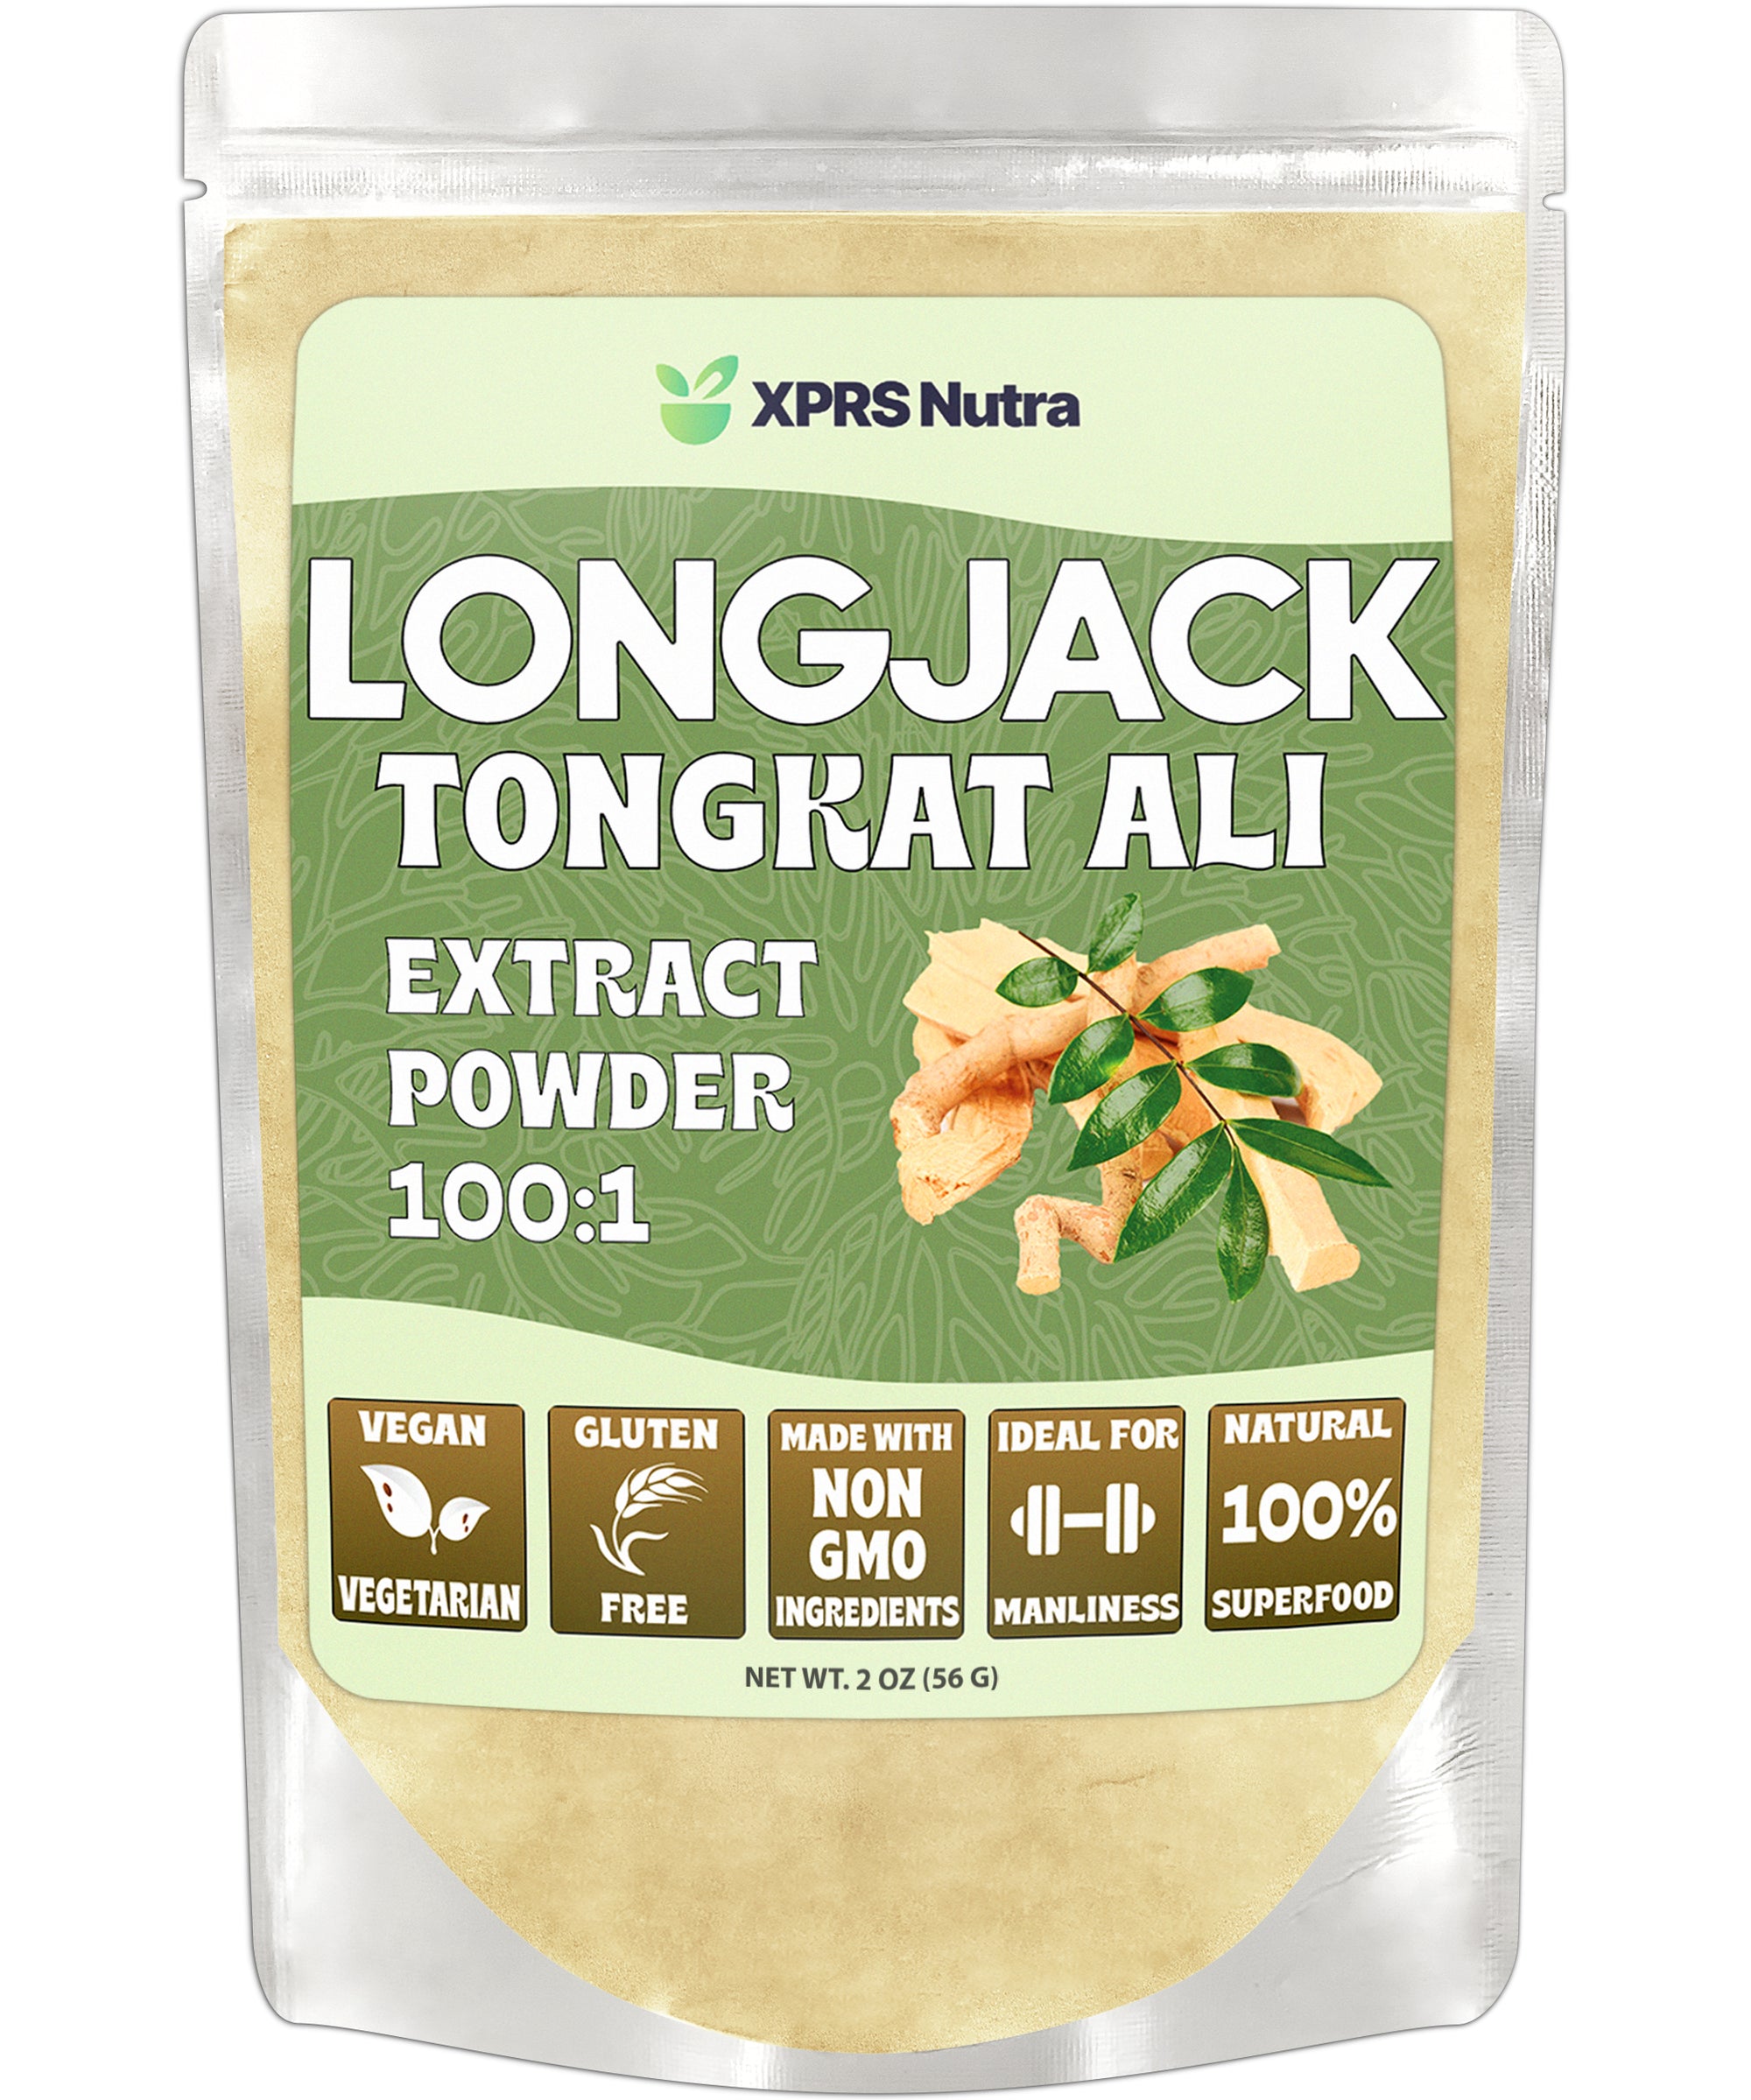 Longjack Tongkat Ali Powder Extract 100:1